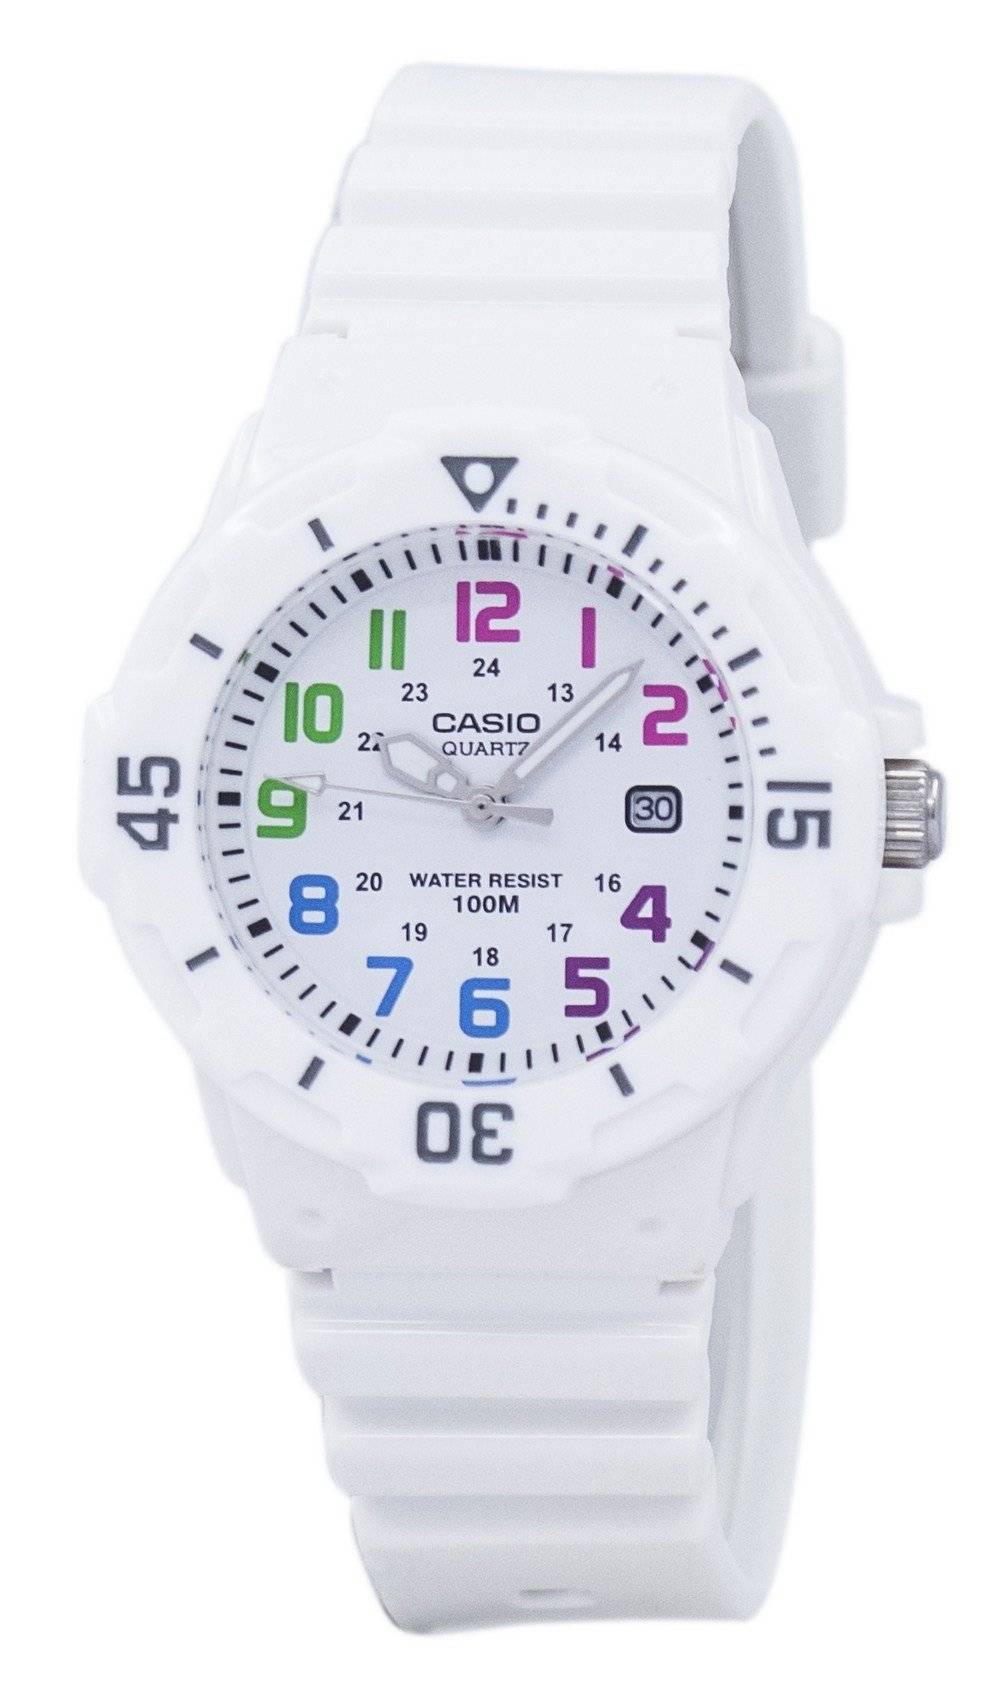 カシオ Enticer アナログ ホワイト ダイヤル LRW 200 H 7BVDF LRW 200 H 7BV レディース腕時計 ja